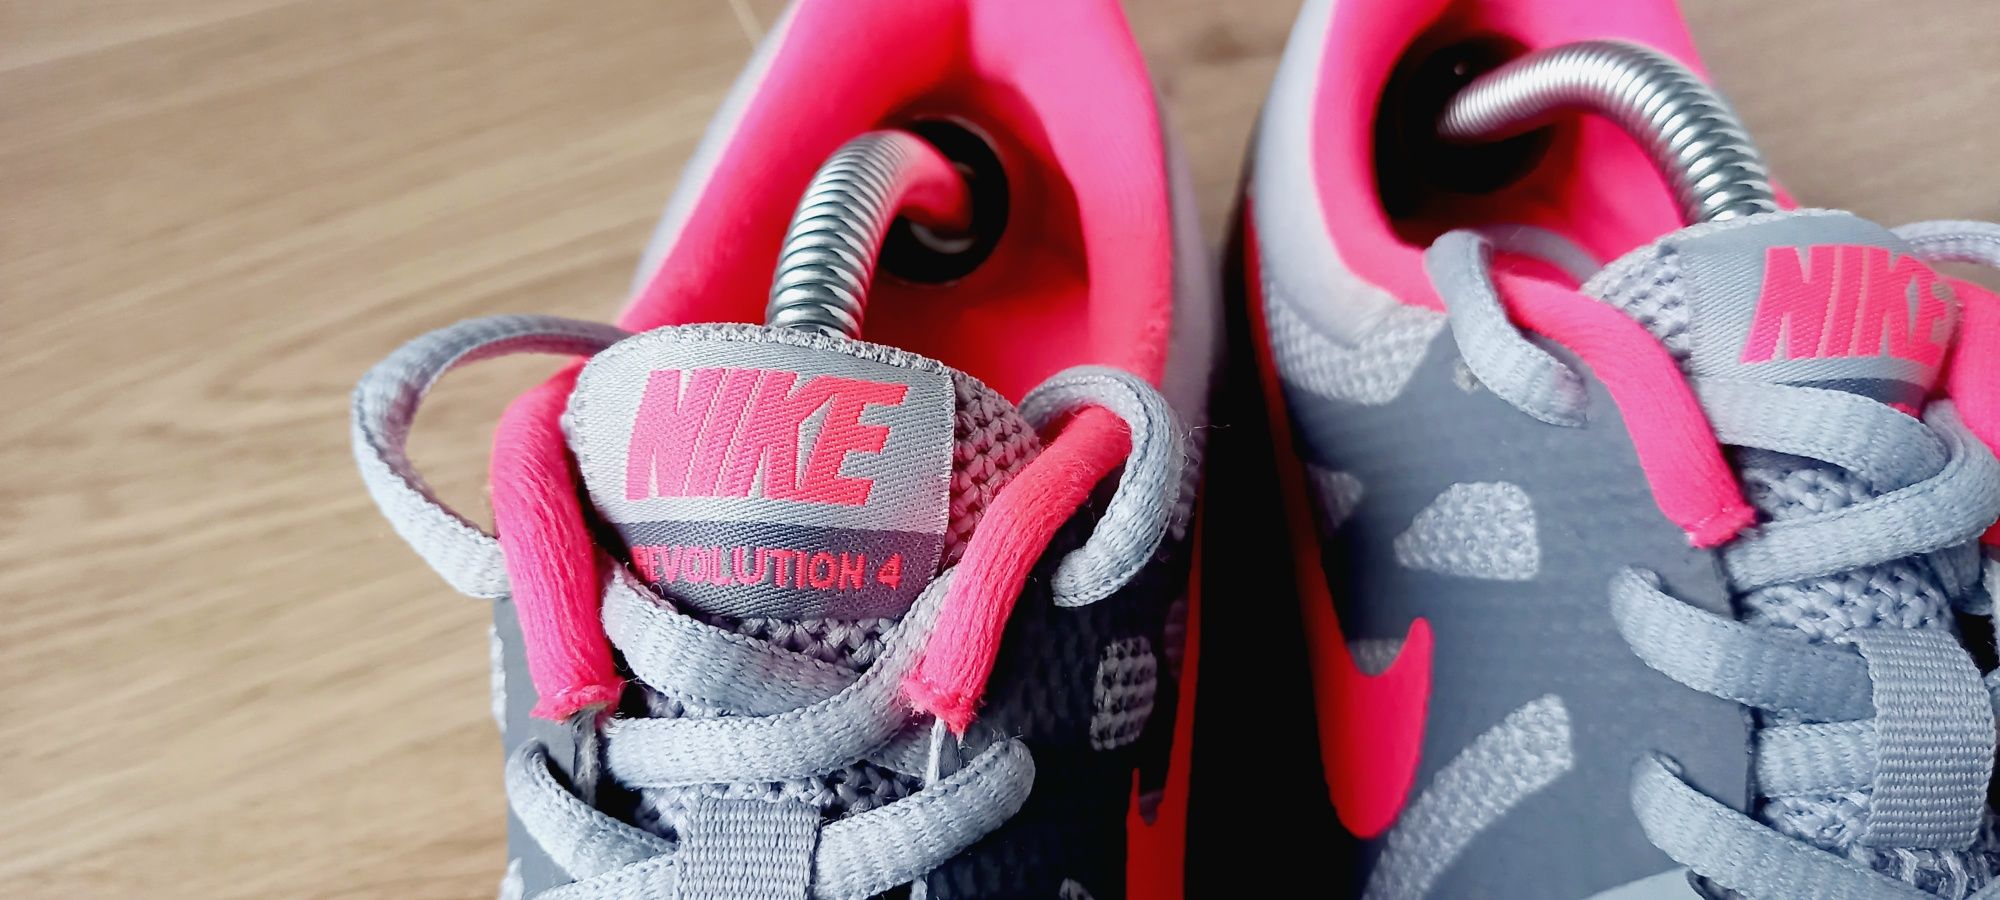 Nike Revolution 4, damskie obuwie sportowe, roz. 38